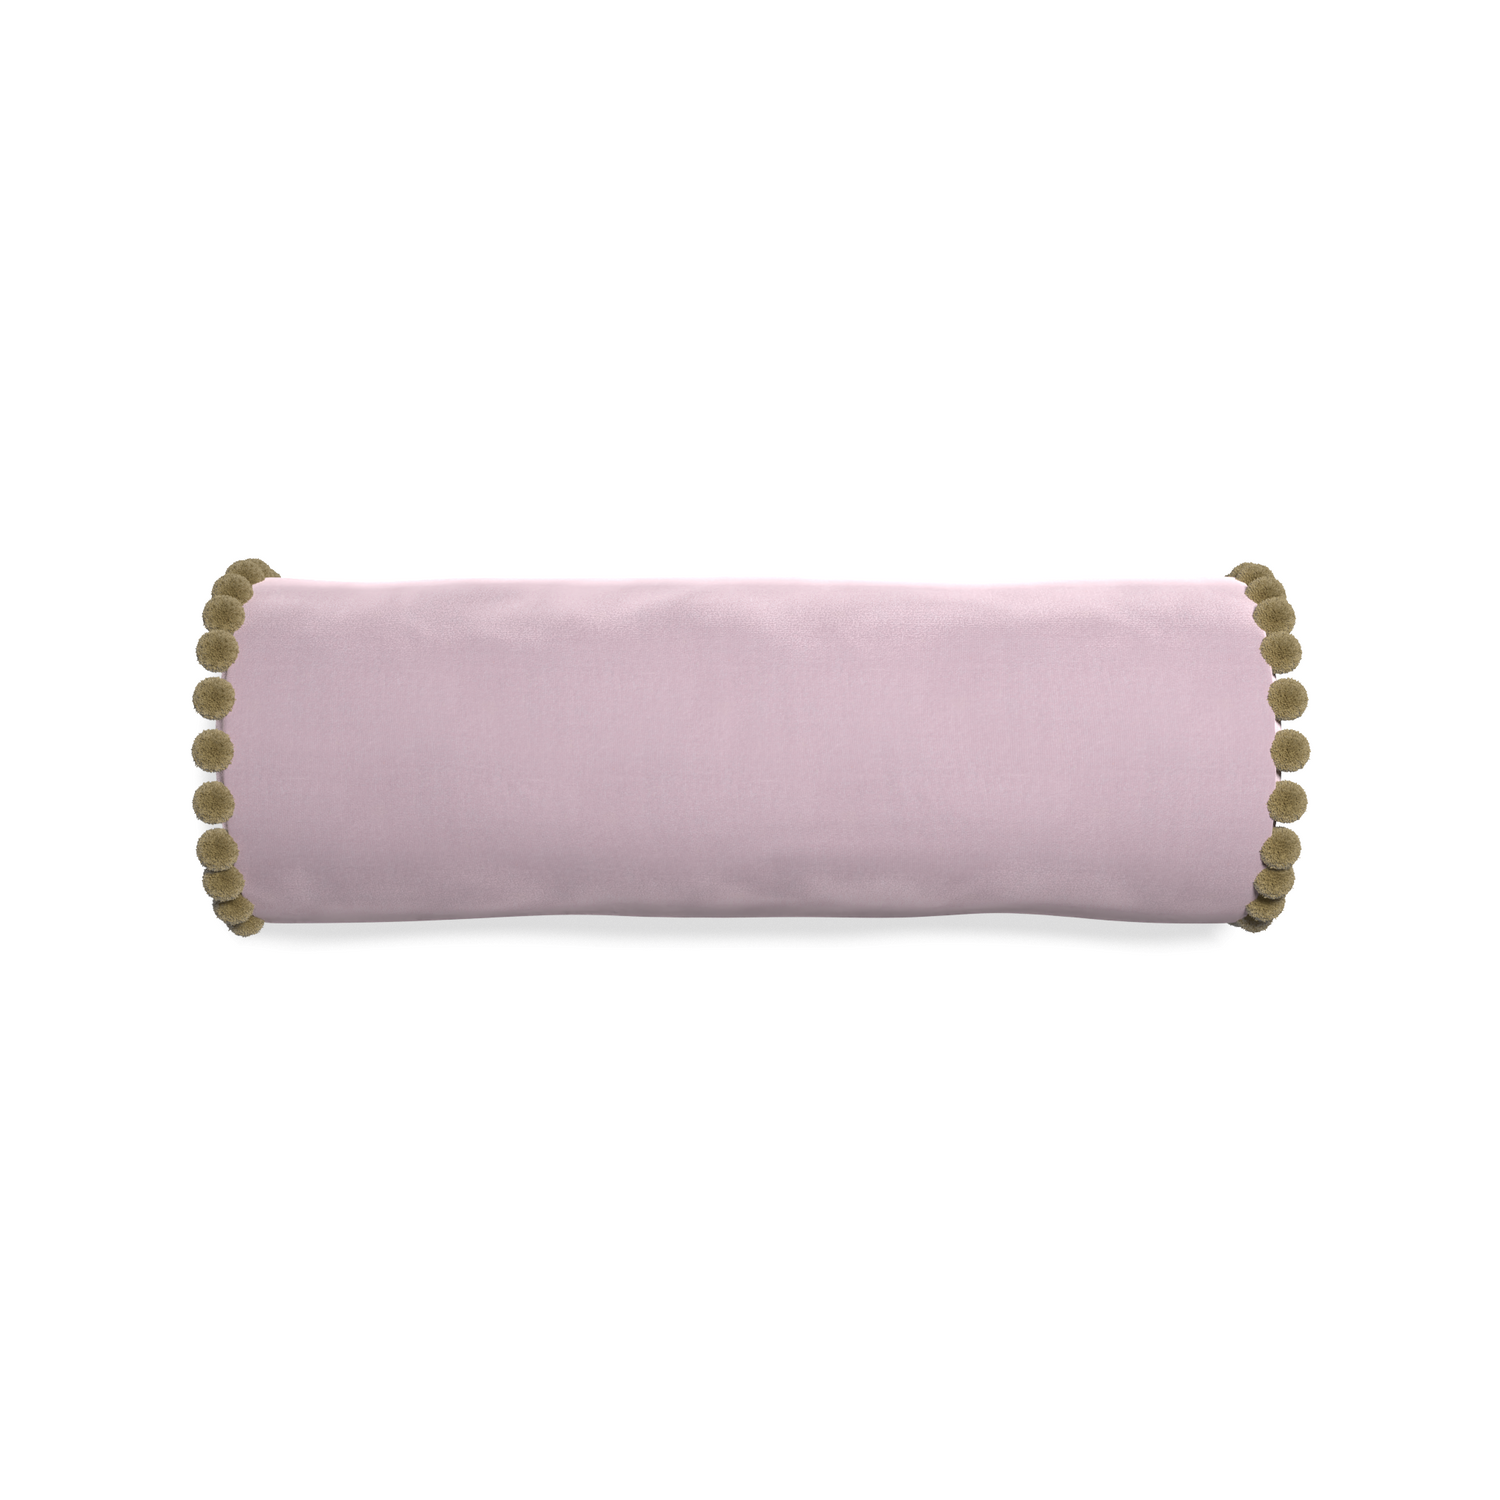 bolster lilac velvet pillow with olive green pom poms